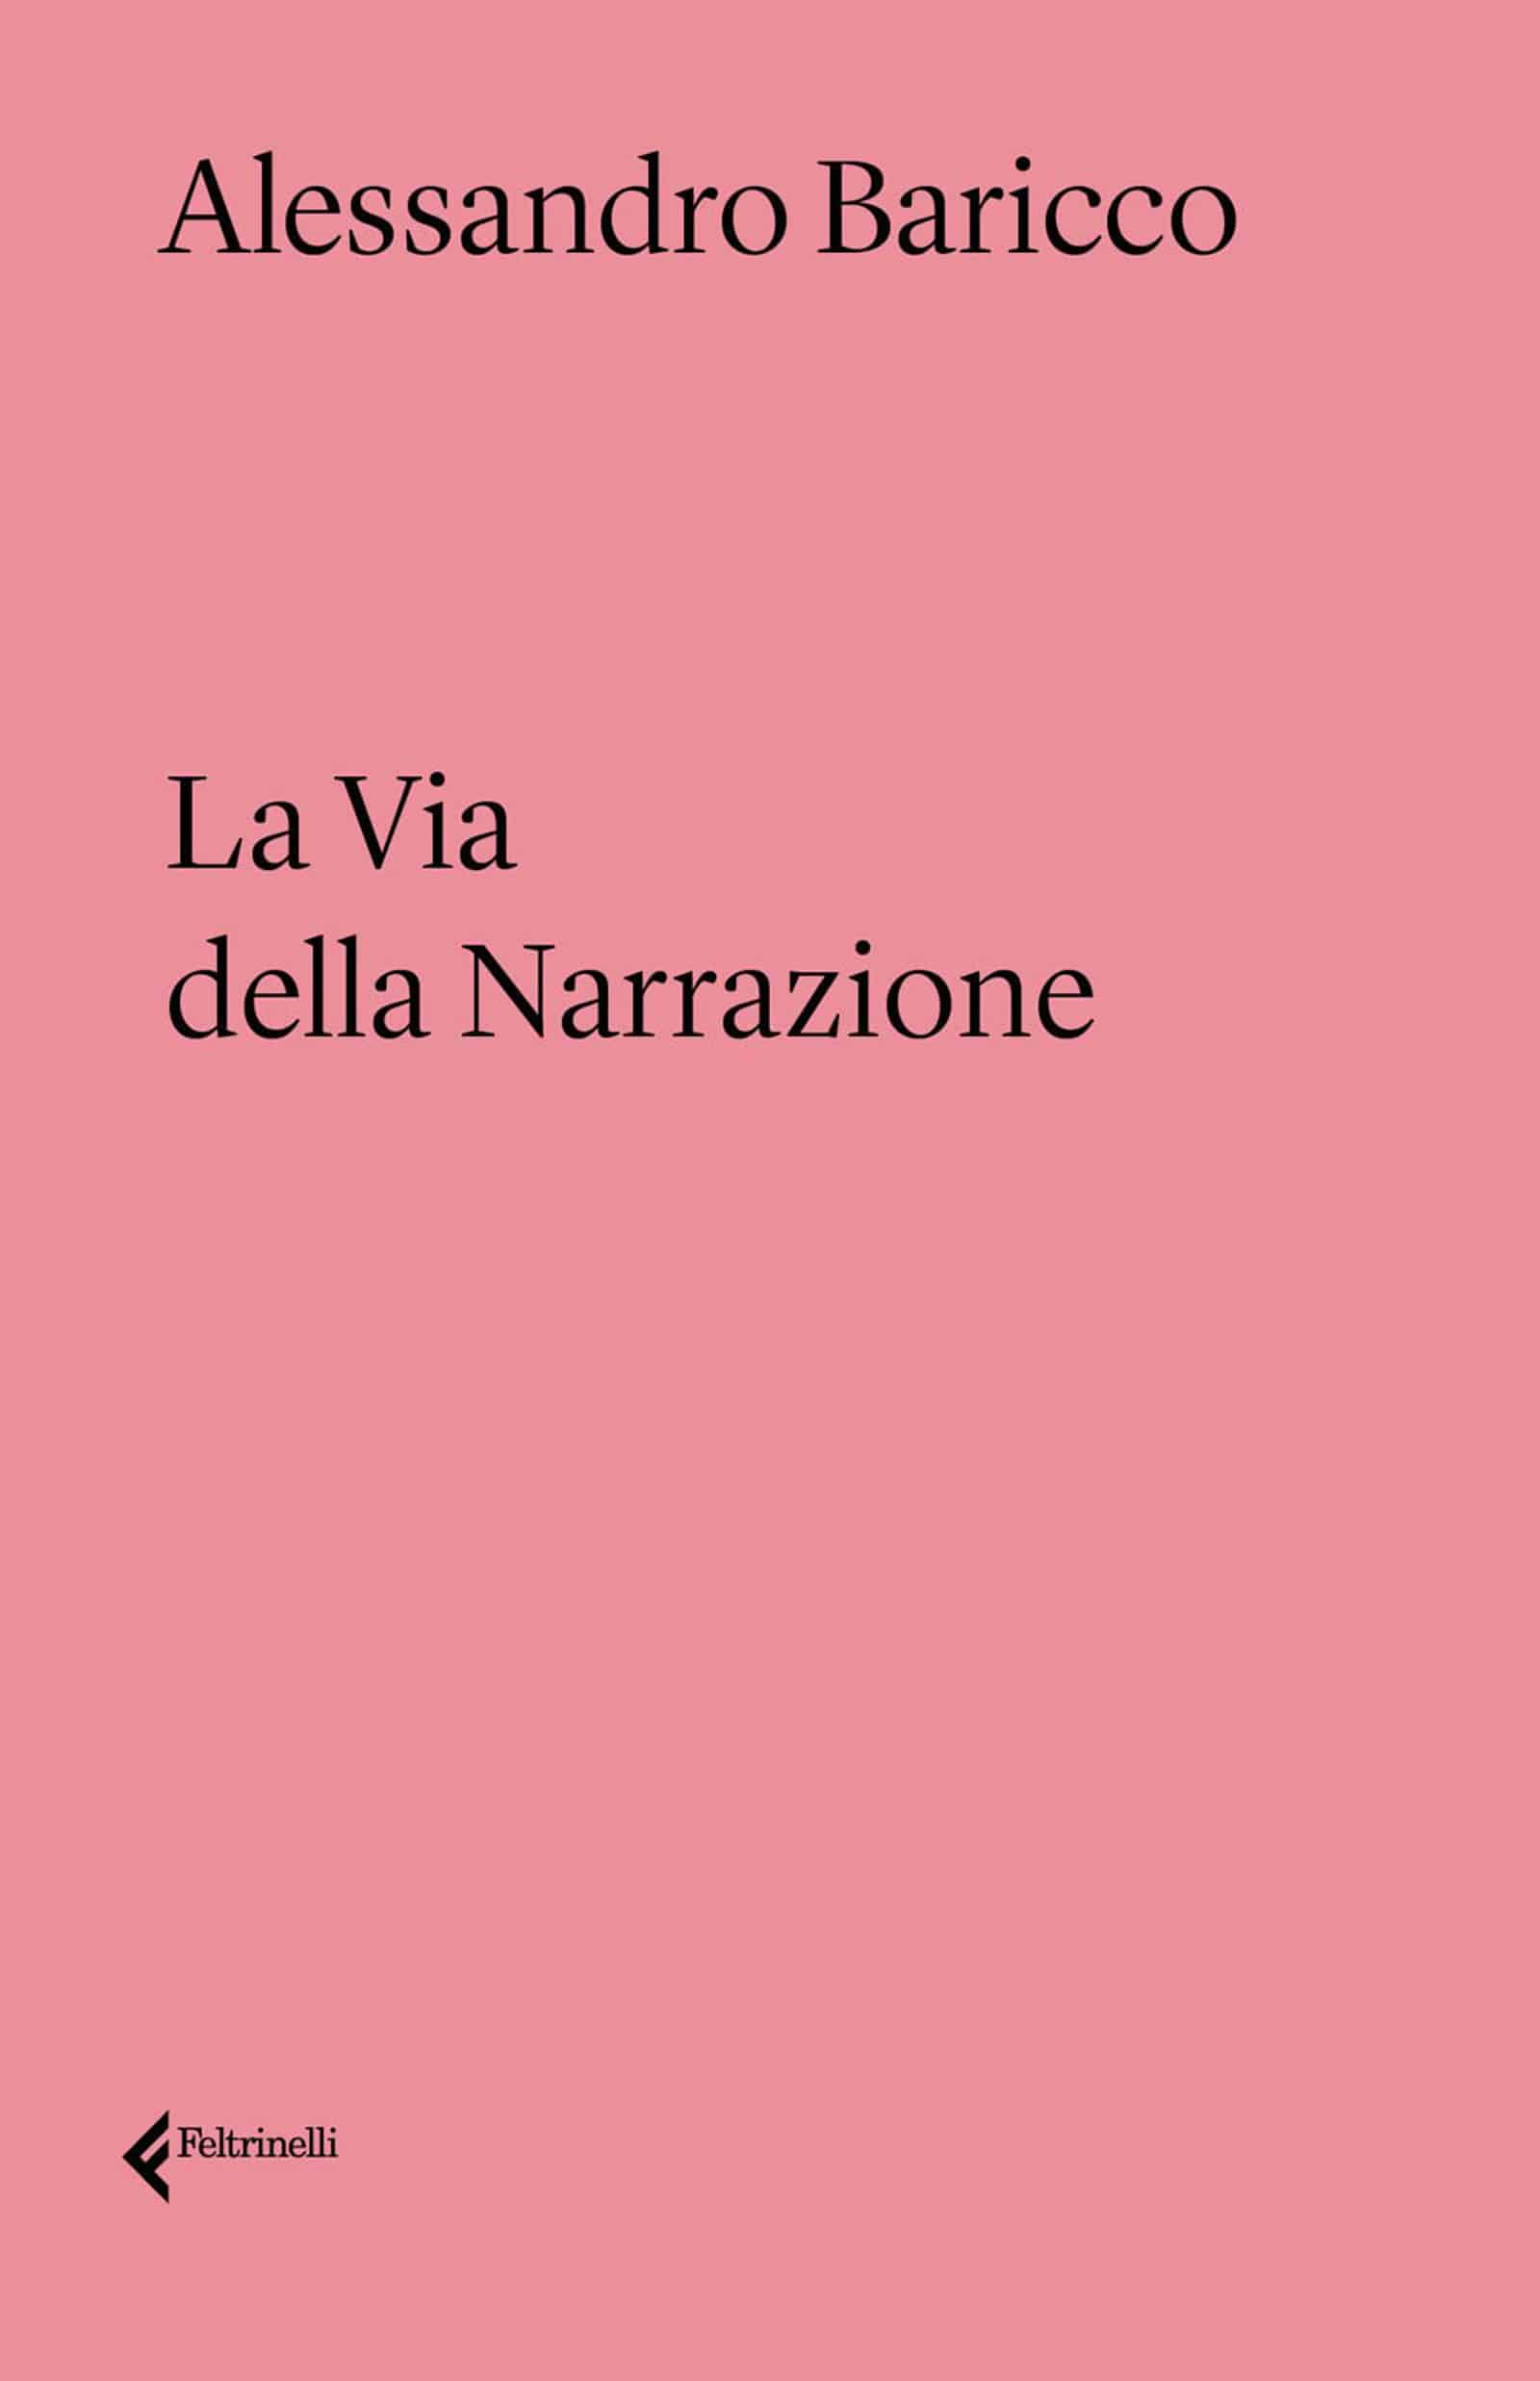 La via della Narrazione 2022 di Alessandro Baricco Recensione del libro Featured